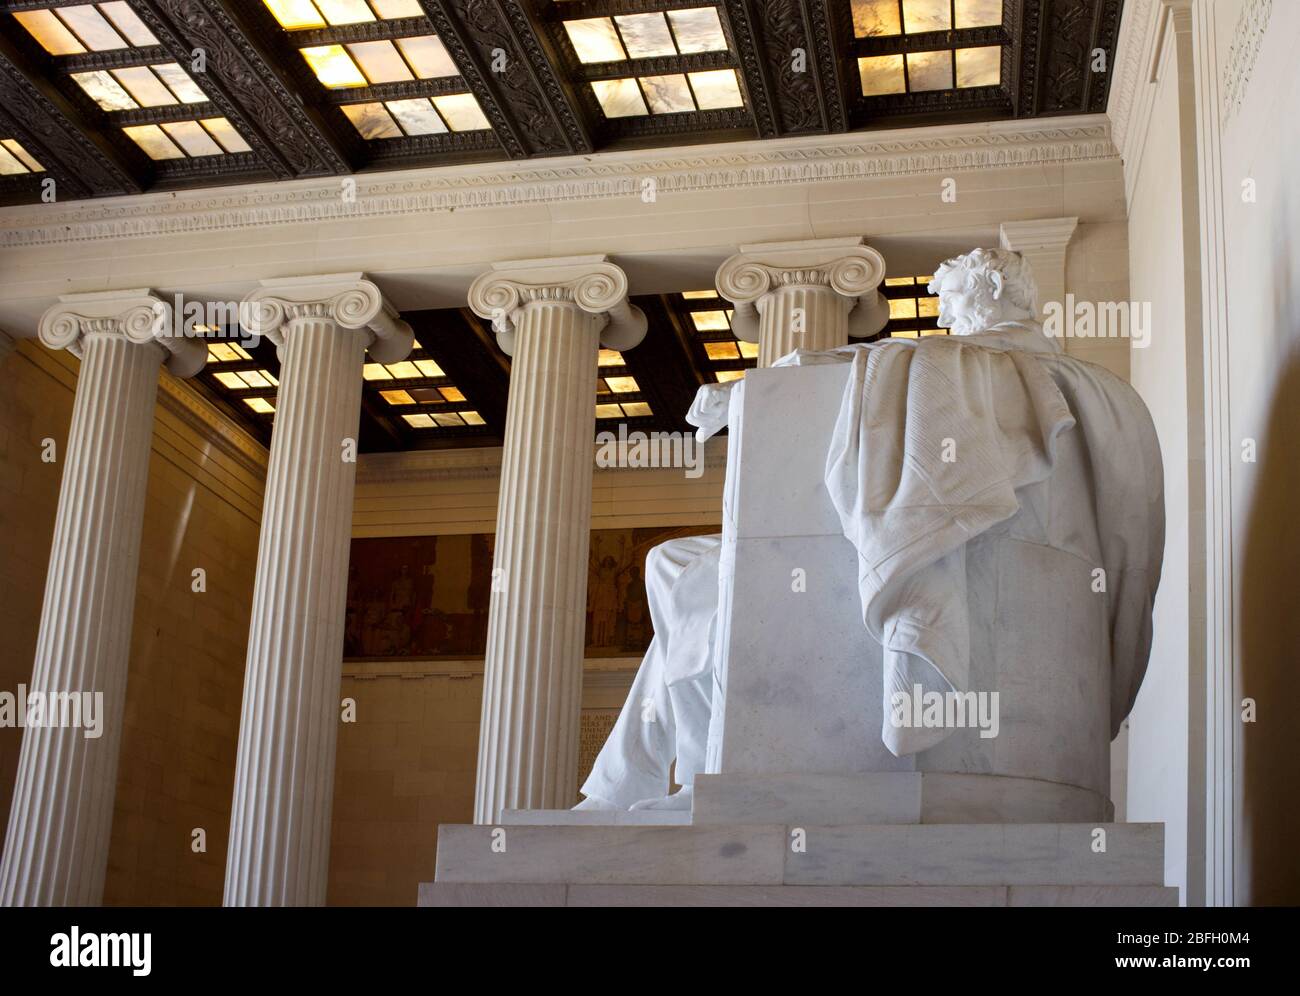 Lincoln Memorial, National Mall, Washington D.C., USA Stockfoto